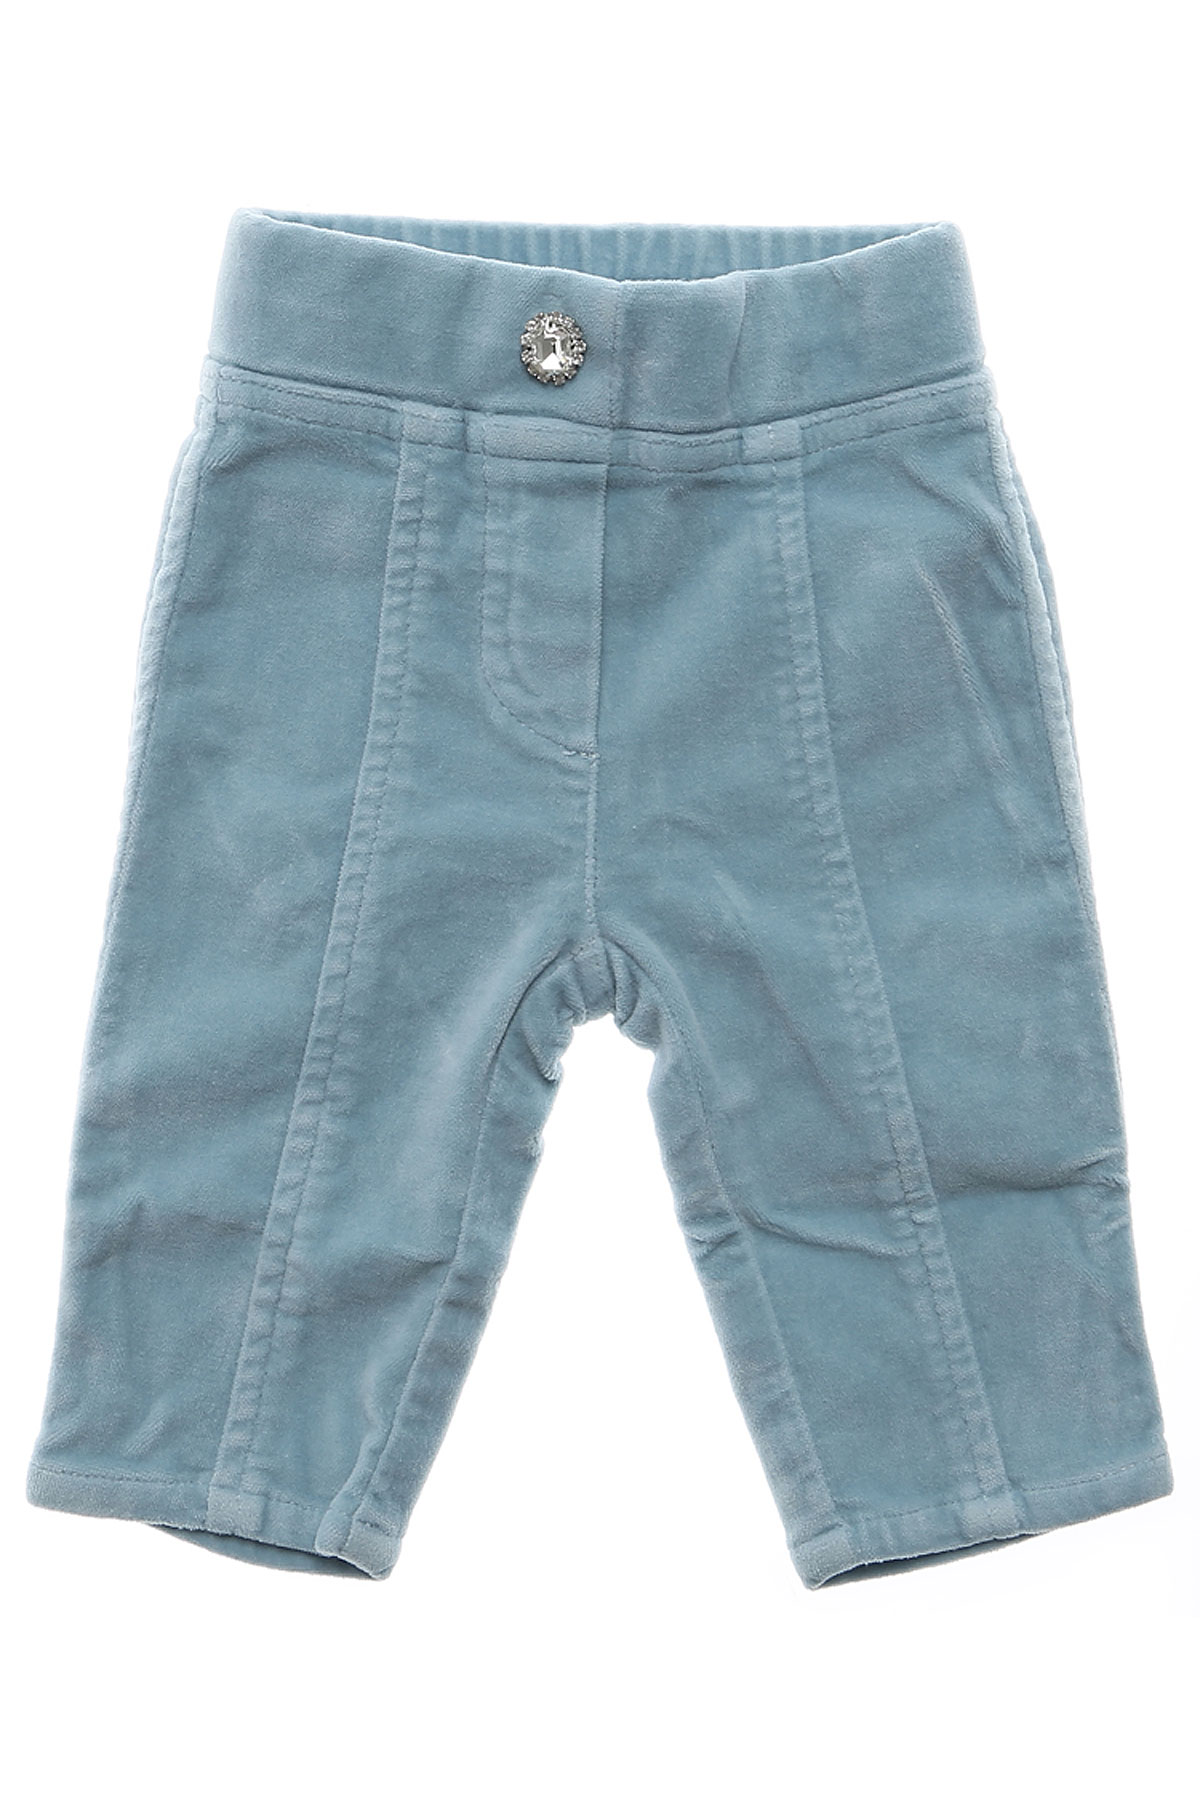 Monnalisa Pantalons Bébé pour Fille Outlet, Bleu ciel, Coton, 2017, 18M 3M 3Y 9M